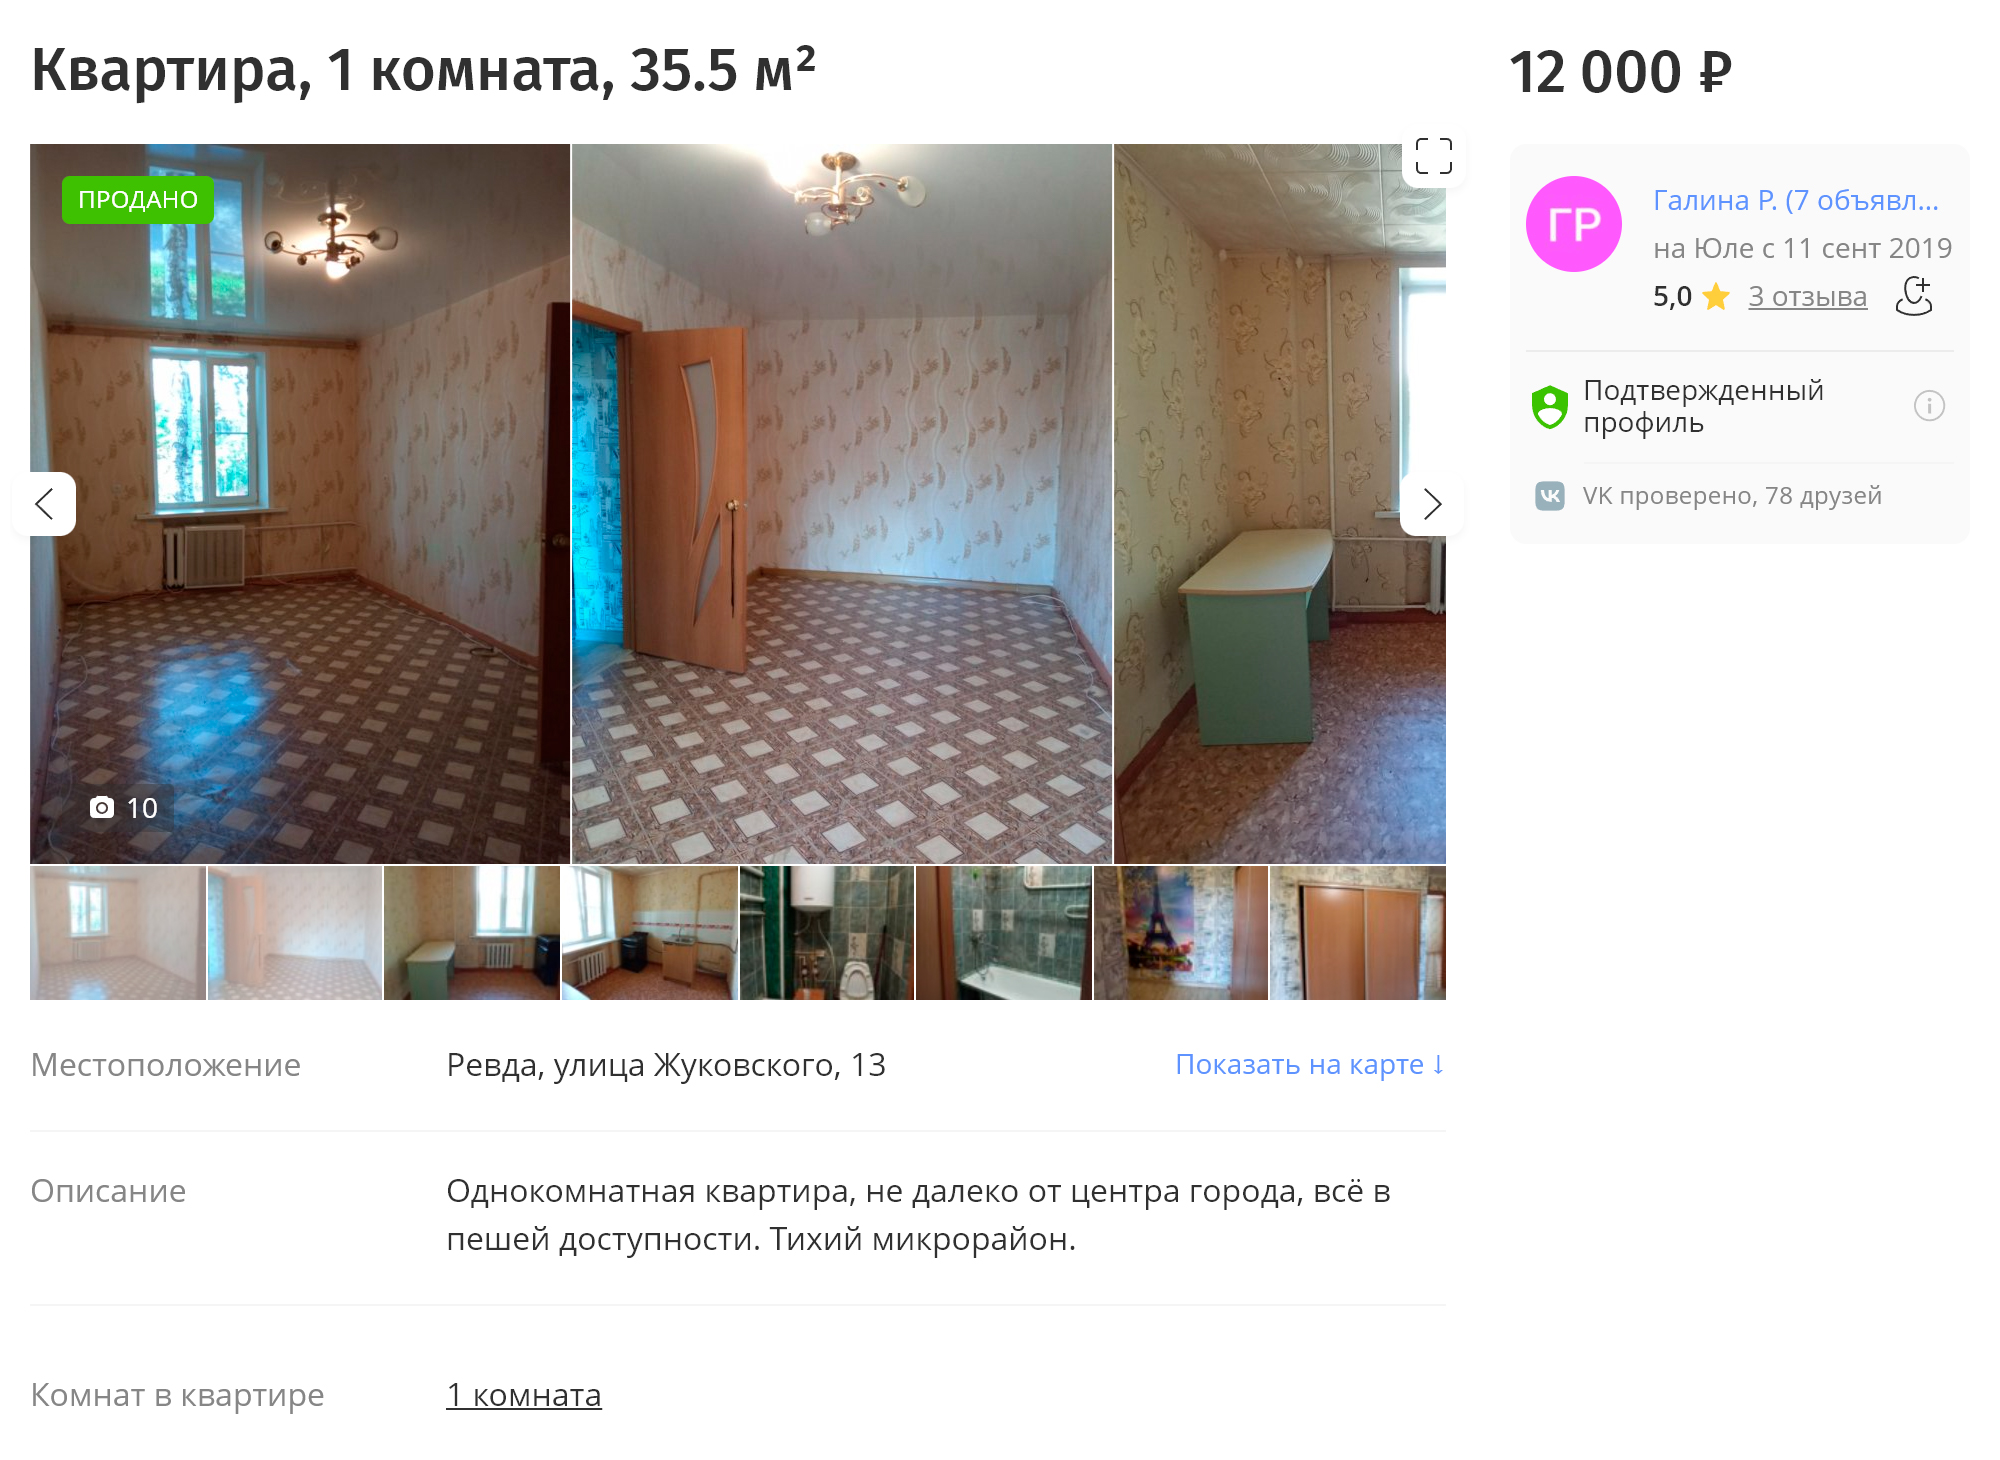 Это квартира в аренду в сталинке в центре города. За такую однушку просят 12 000 ₽ в месяц. Источник: youla.ru